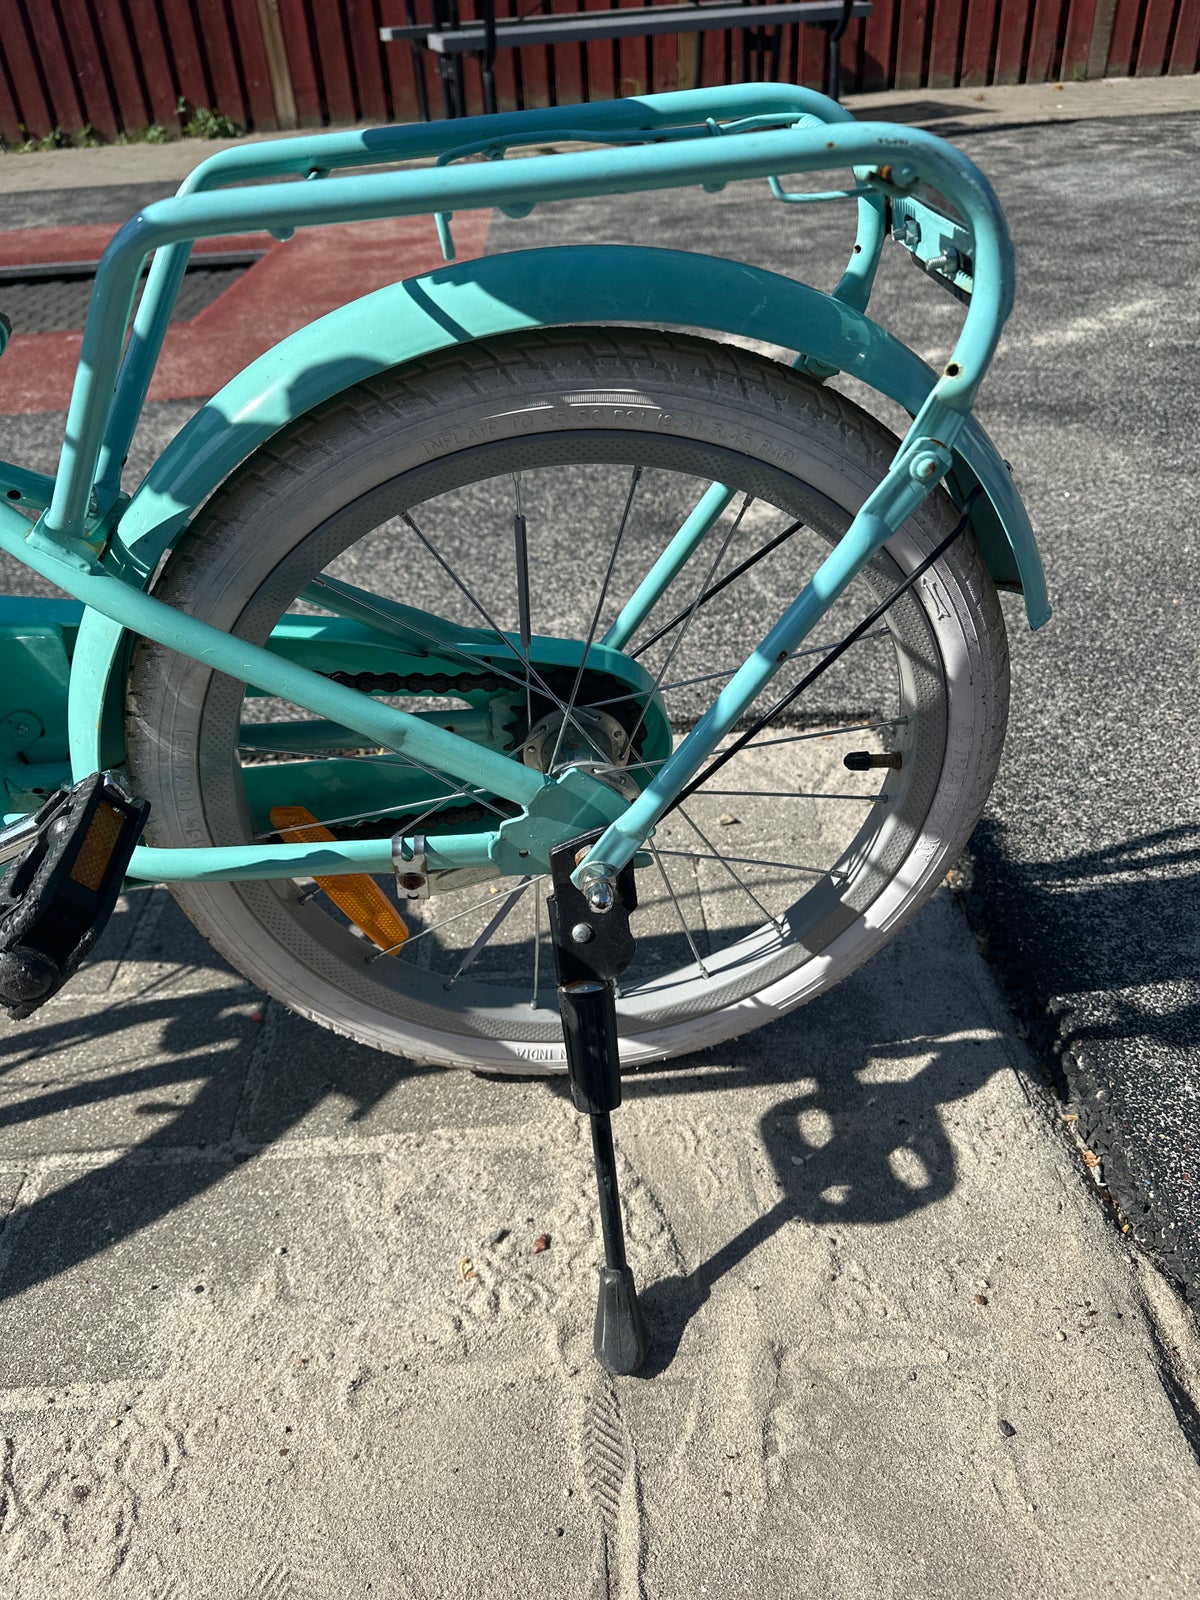 Pigecykel, classic cykel